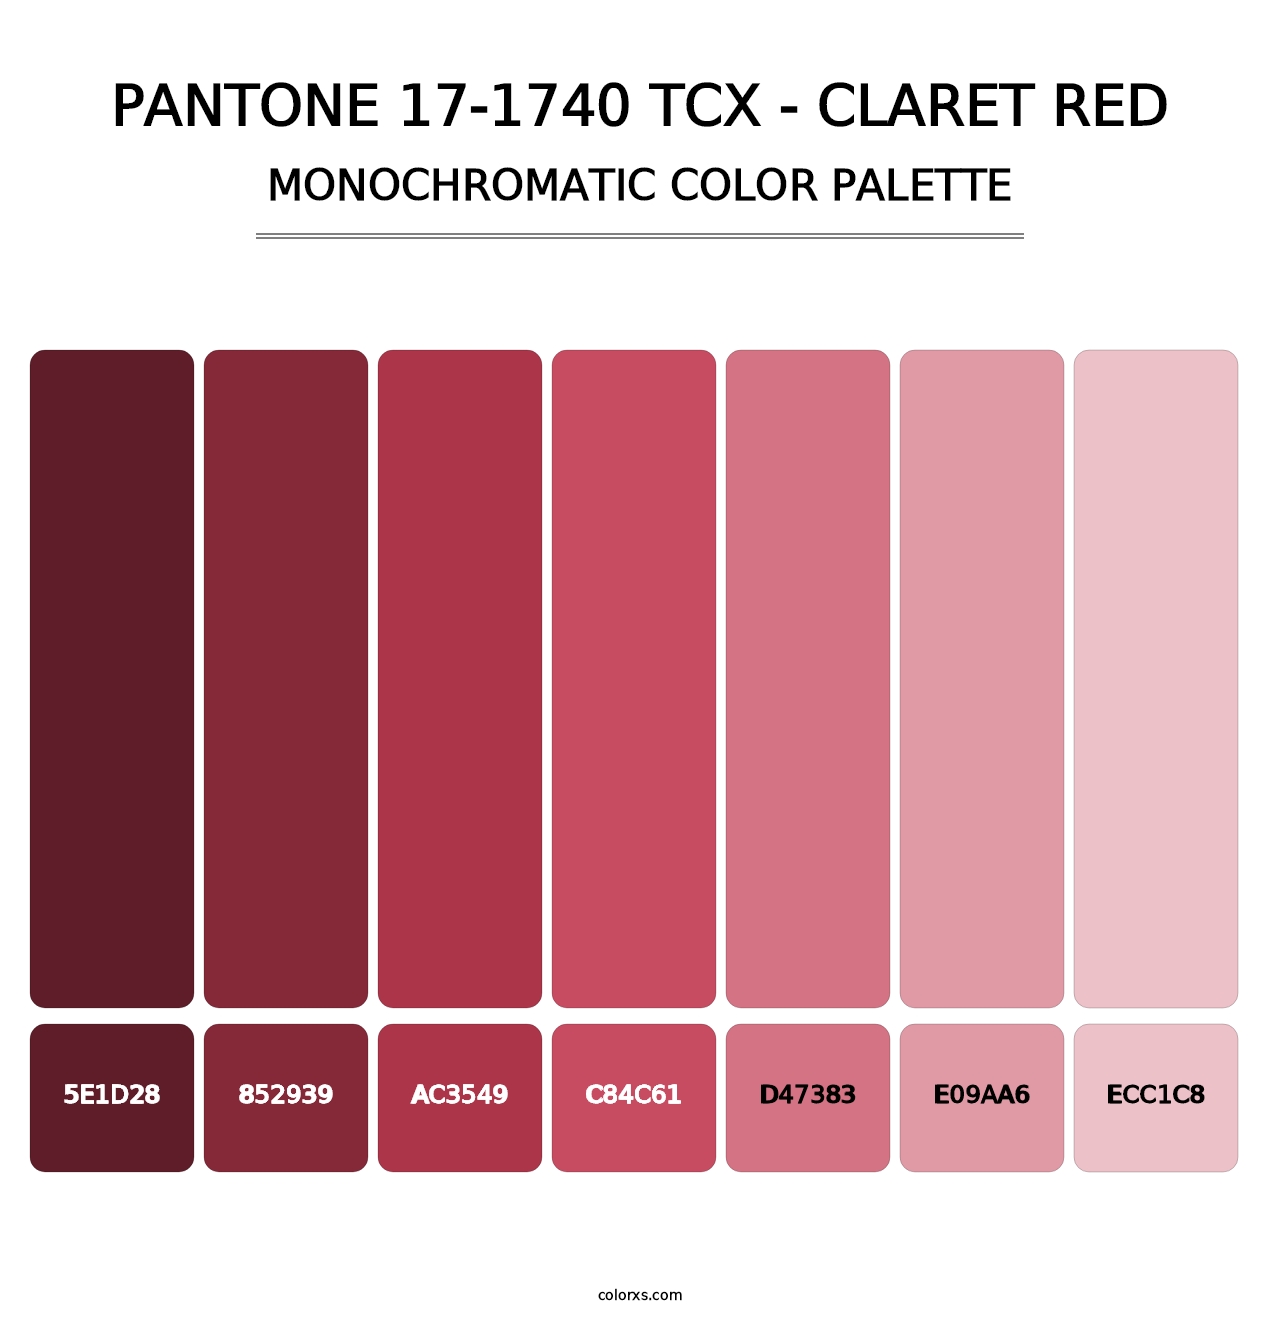 PANTONE 17-1740 TCX - Claret Red - Monochromatic Color Palette